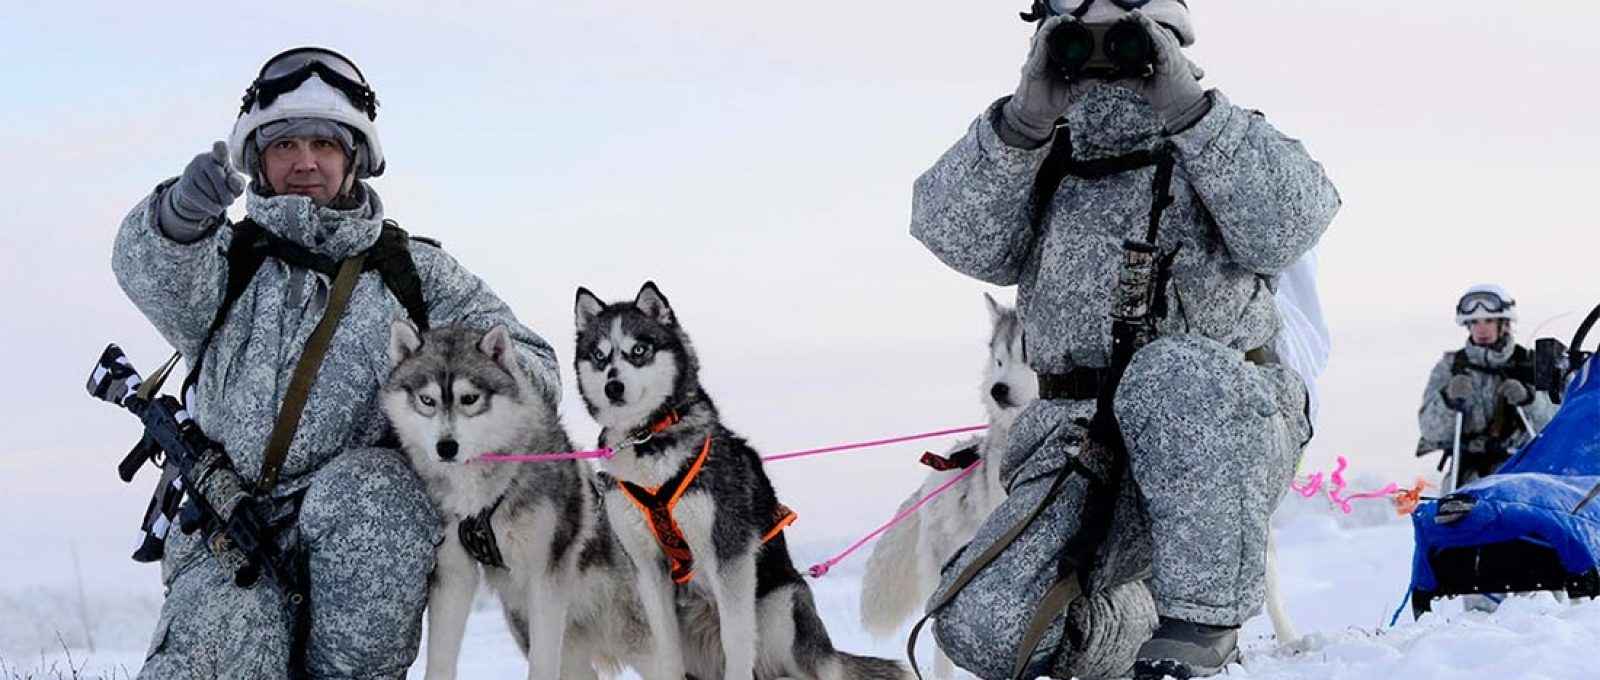 Membros de uma unidade de reconhecimento da brigada de infantaria mecanizada do Ártico da Frota do Norte conduzem exercícios militares e aprendem a andar de trenó puxado por cães (Foto: Lev Fedossev/The Arctic Institute).